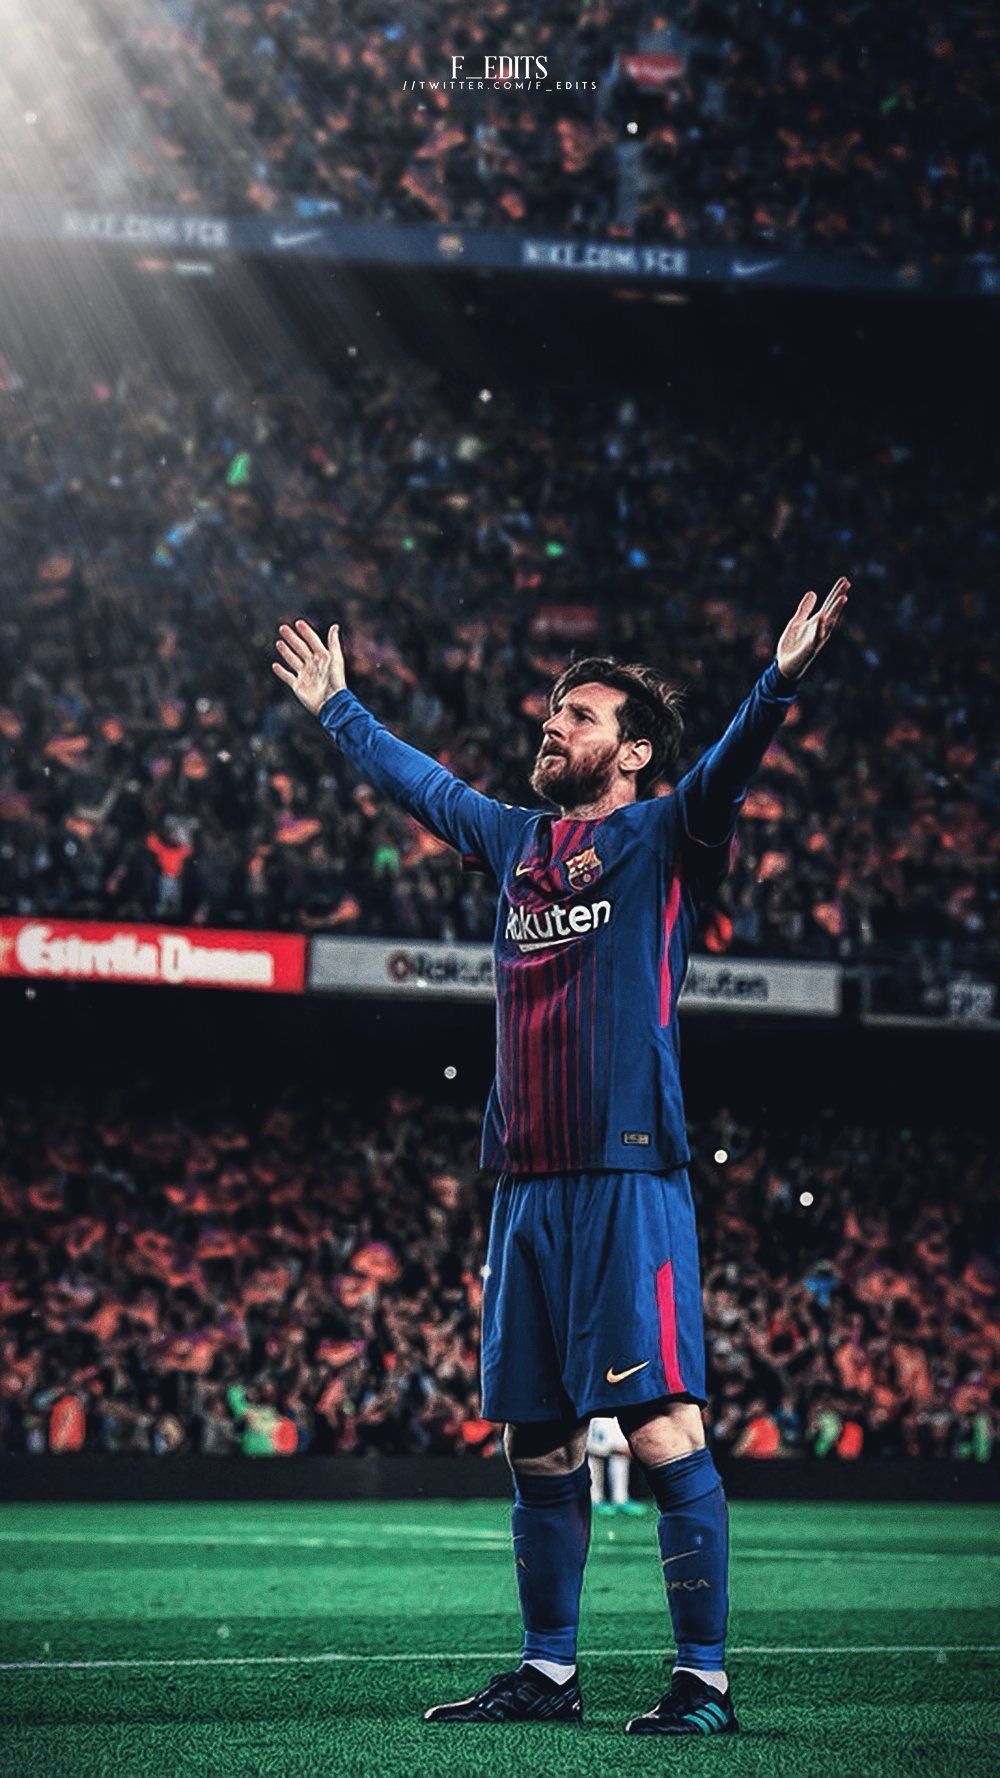 Hình nền Messi đấu Real Madrid - Đẹp mịn màng với chất lượng cao, tuyệt đẹp như pha solo của Messi đầu mùa, hình nền này sẽ khiến những fan cuồng Messi không thể bỏ qua. Hãy tải và thưởng thức bức ảnh đẹp này ngay!